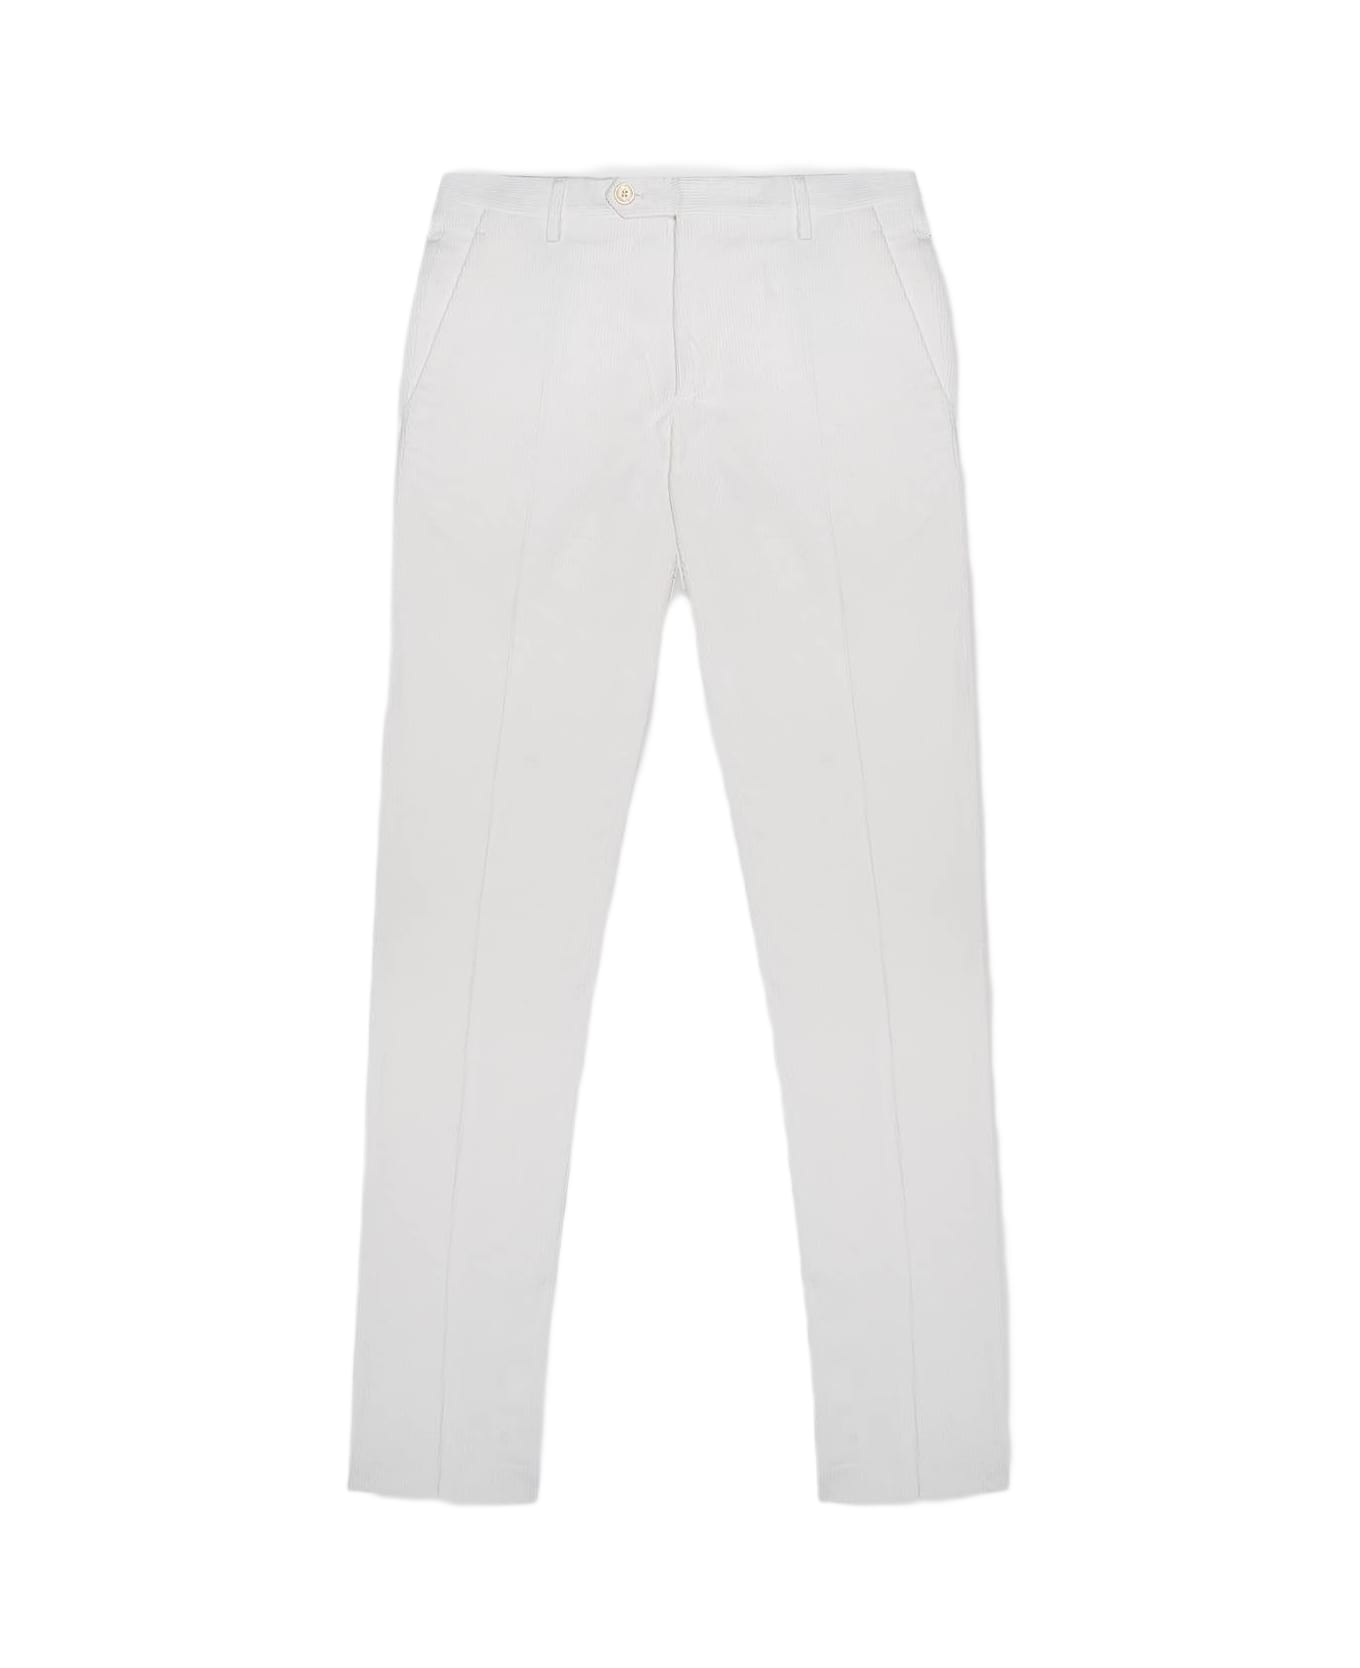 Larusmiani Velvet Trousers 'howard' Pants - White